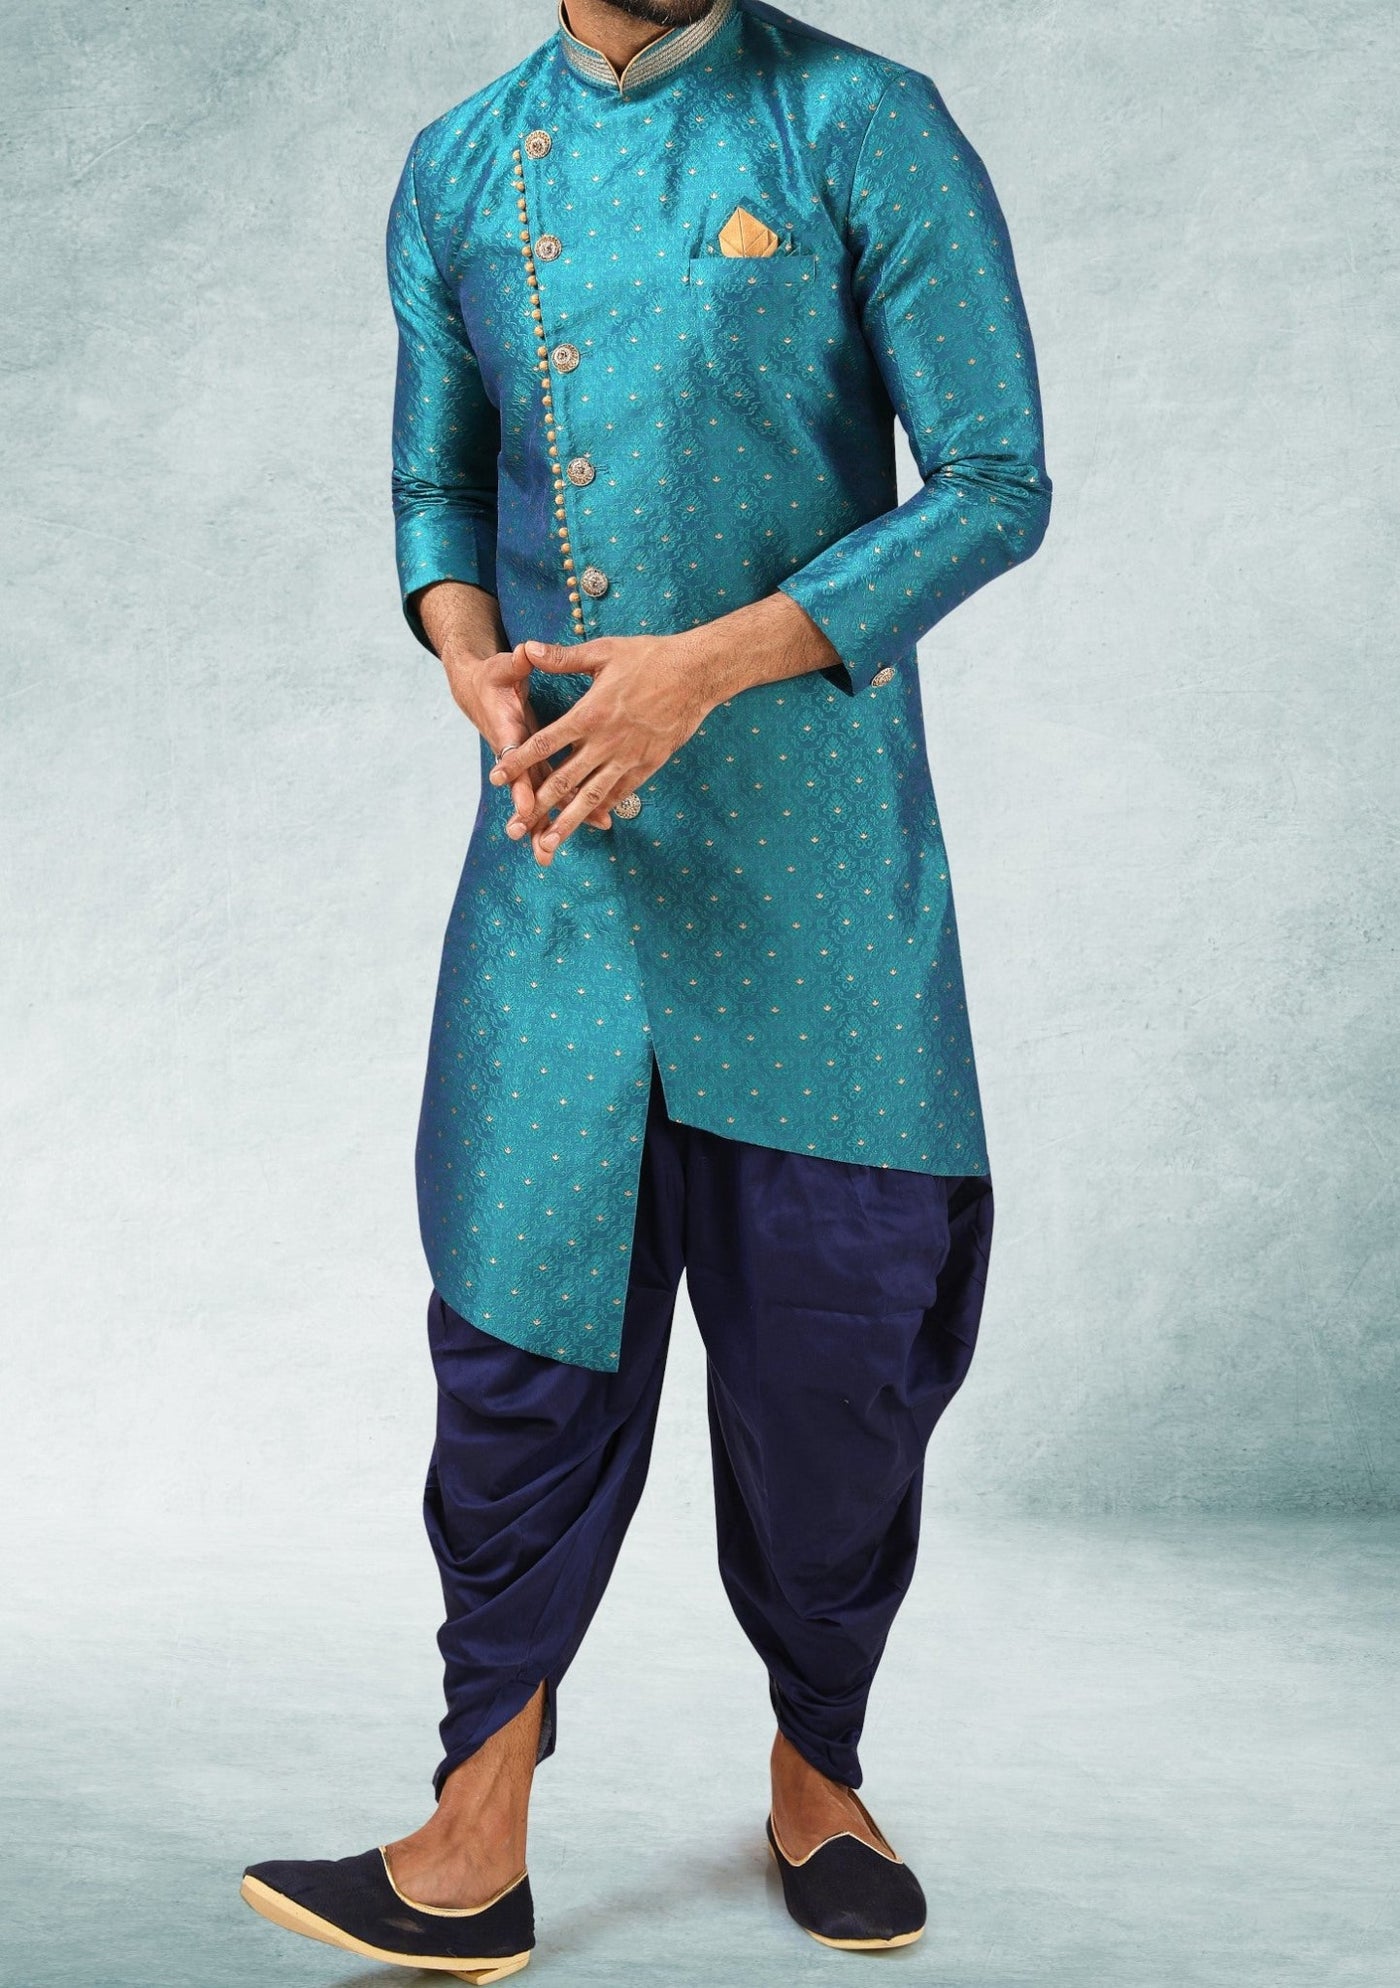 Men's Indo Western Party Wear Sherwani Suit - db20673